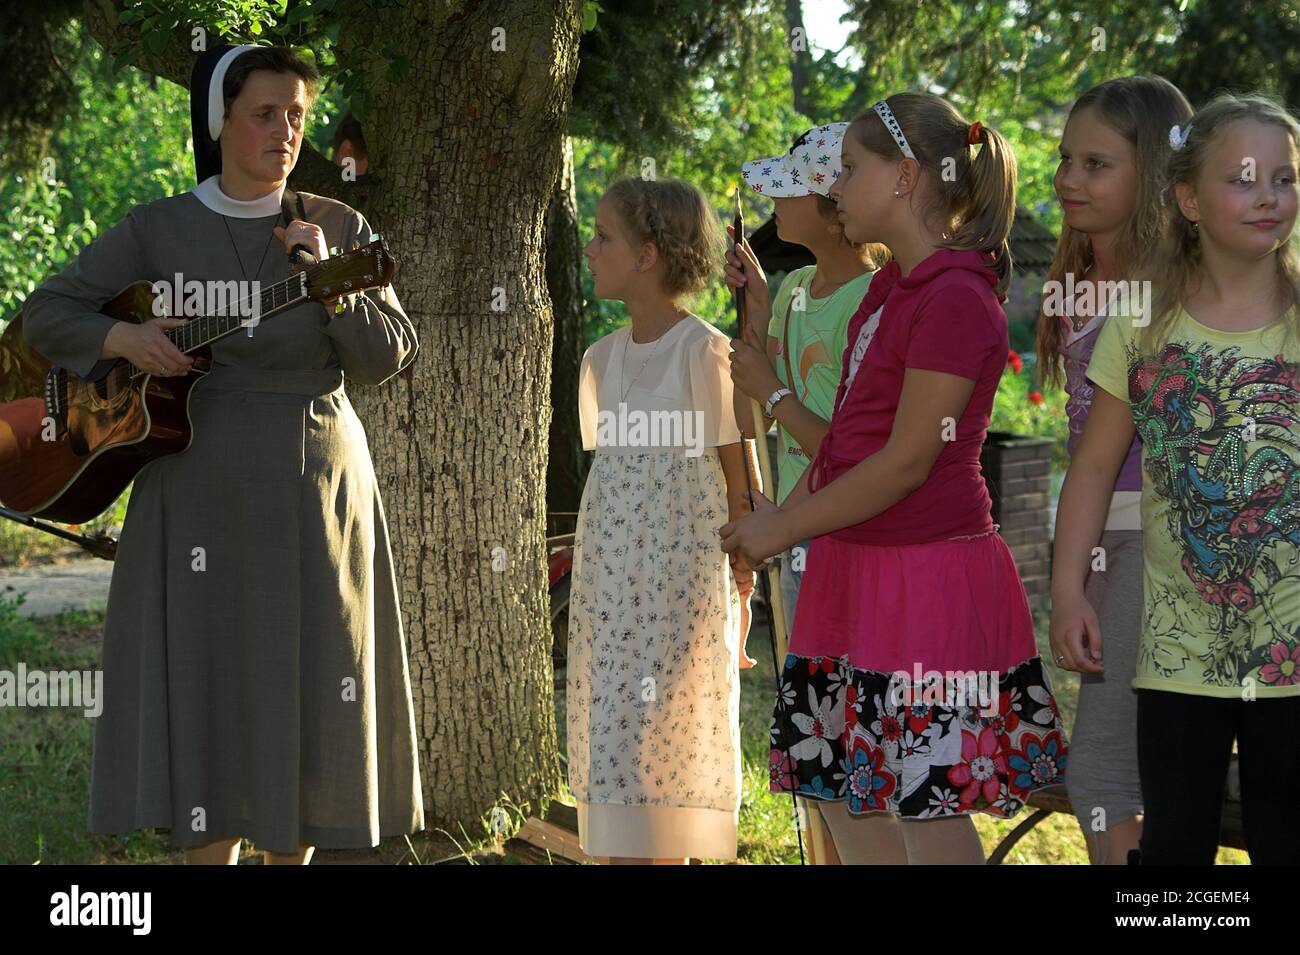 Poland A nun with a guitar surrounded by a group of school-age girls. Eine Nonne mit einer Gitarre, umgeben von einer Gruppe schulpflichtiger Mädchen. Stock Photo